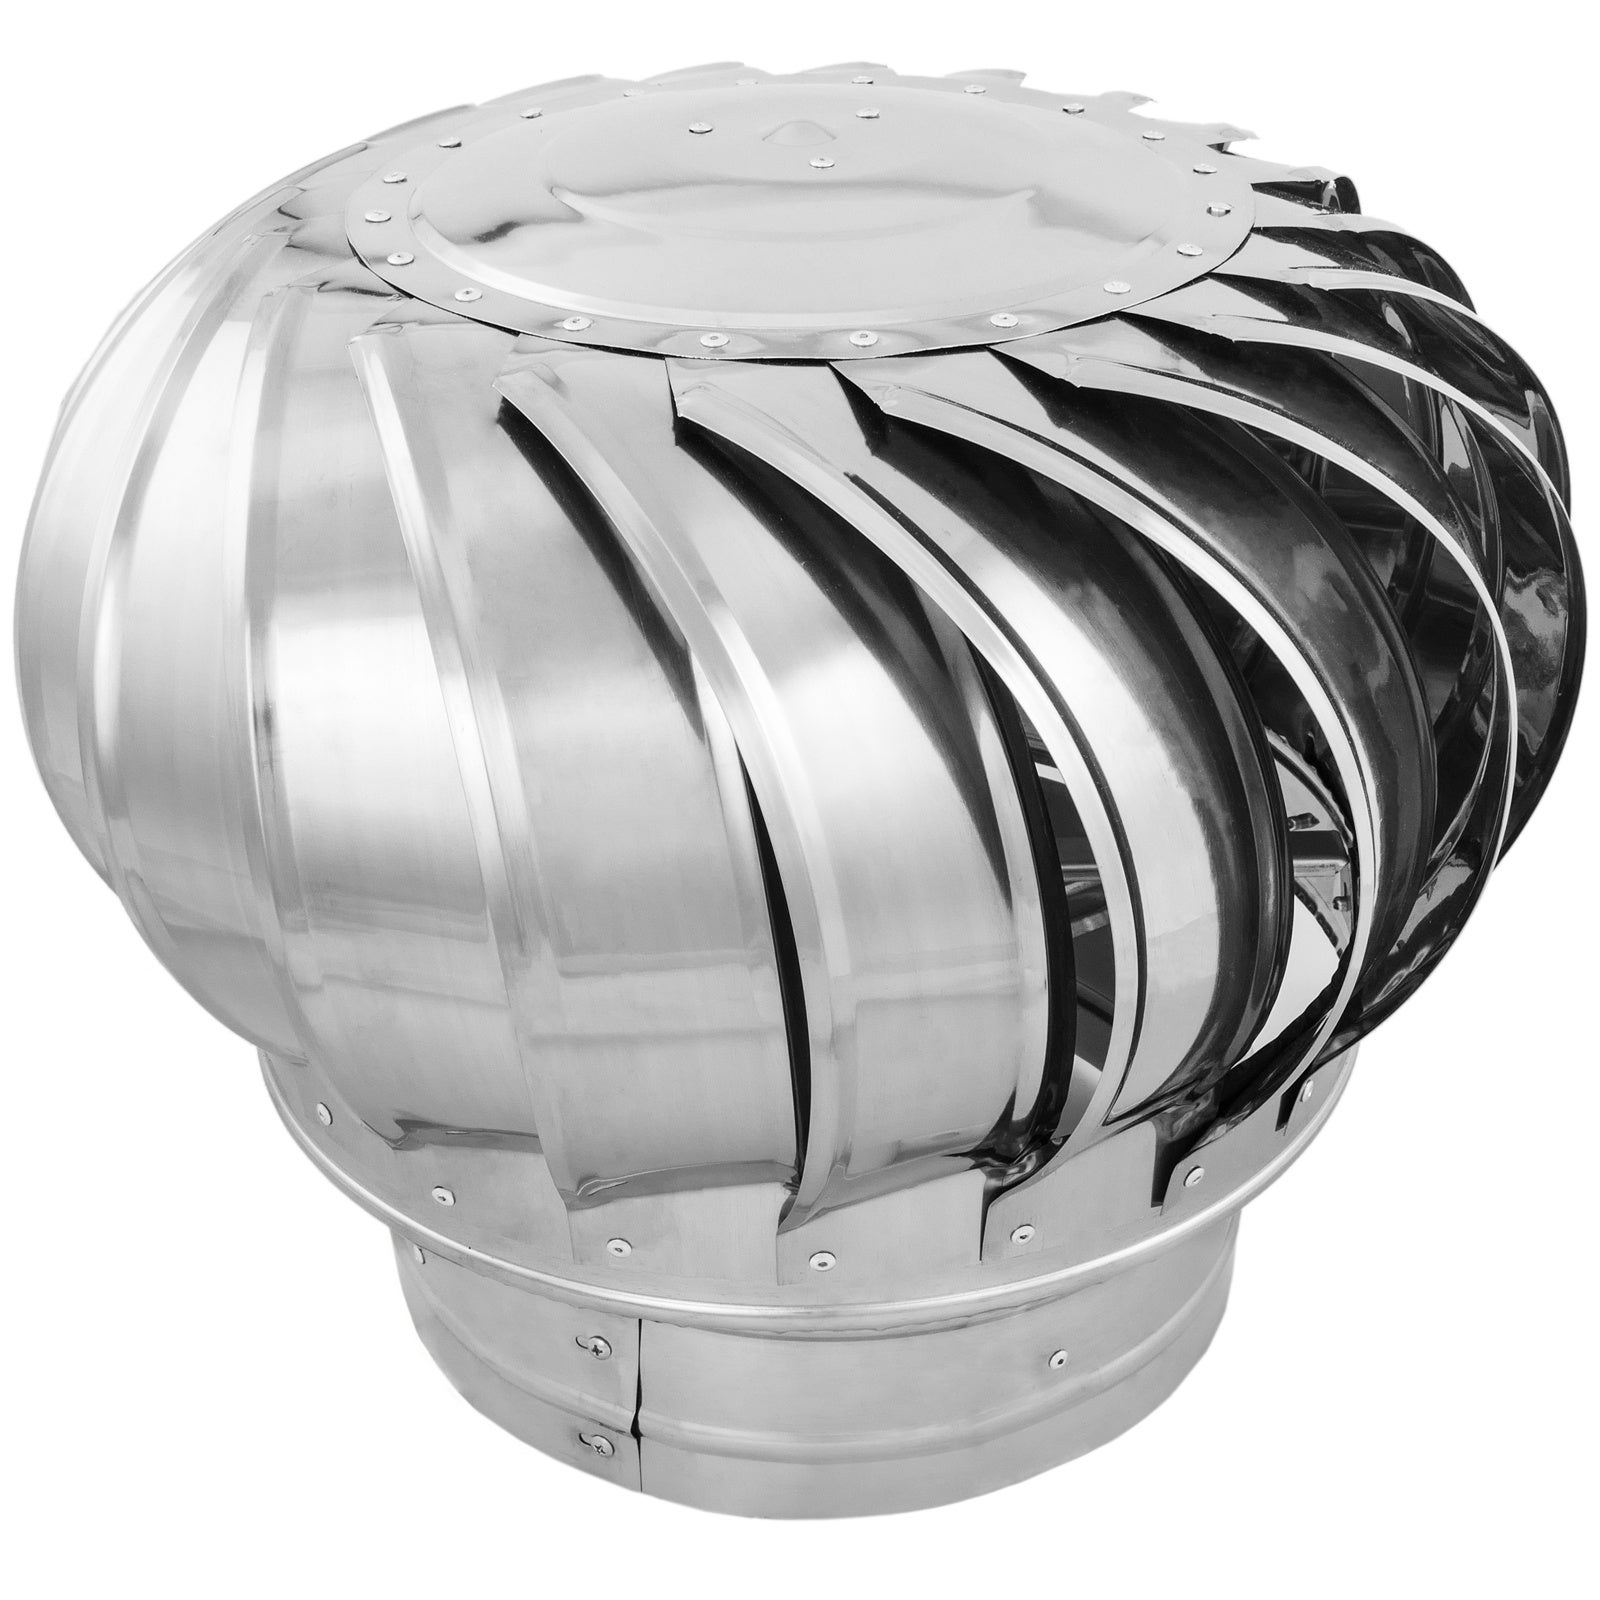 Ventilateur transversal, Turbine 240x45 mm, 230V/1/50Hz, 22 W + acheter  moins cher